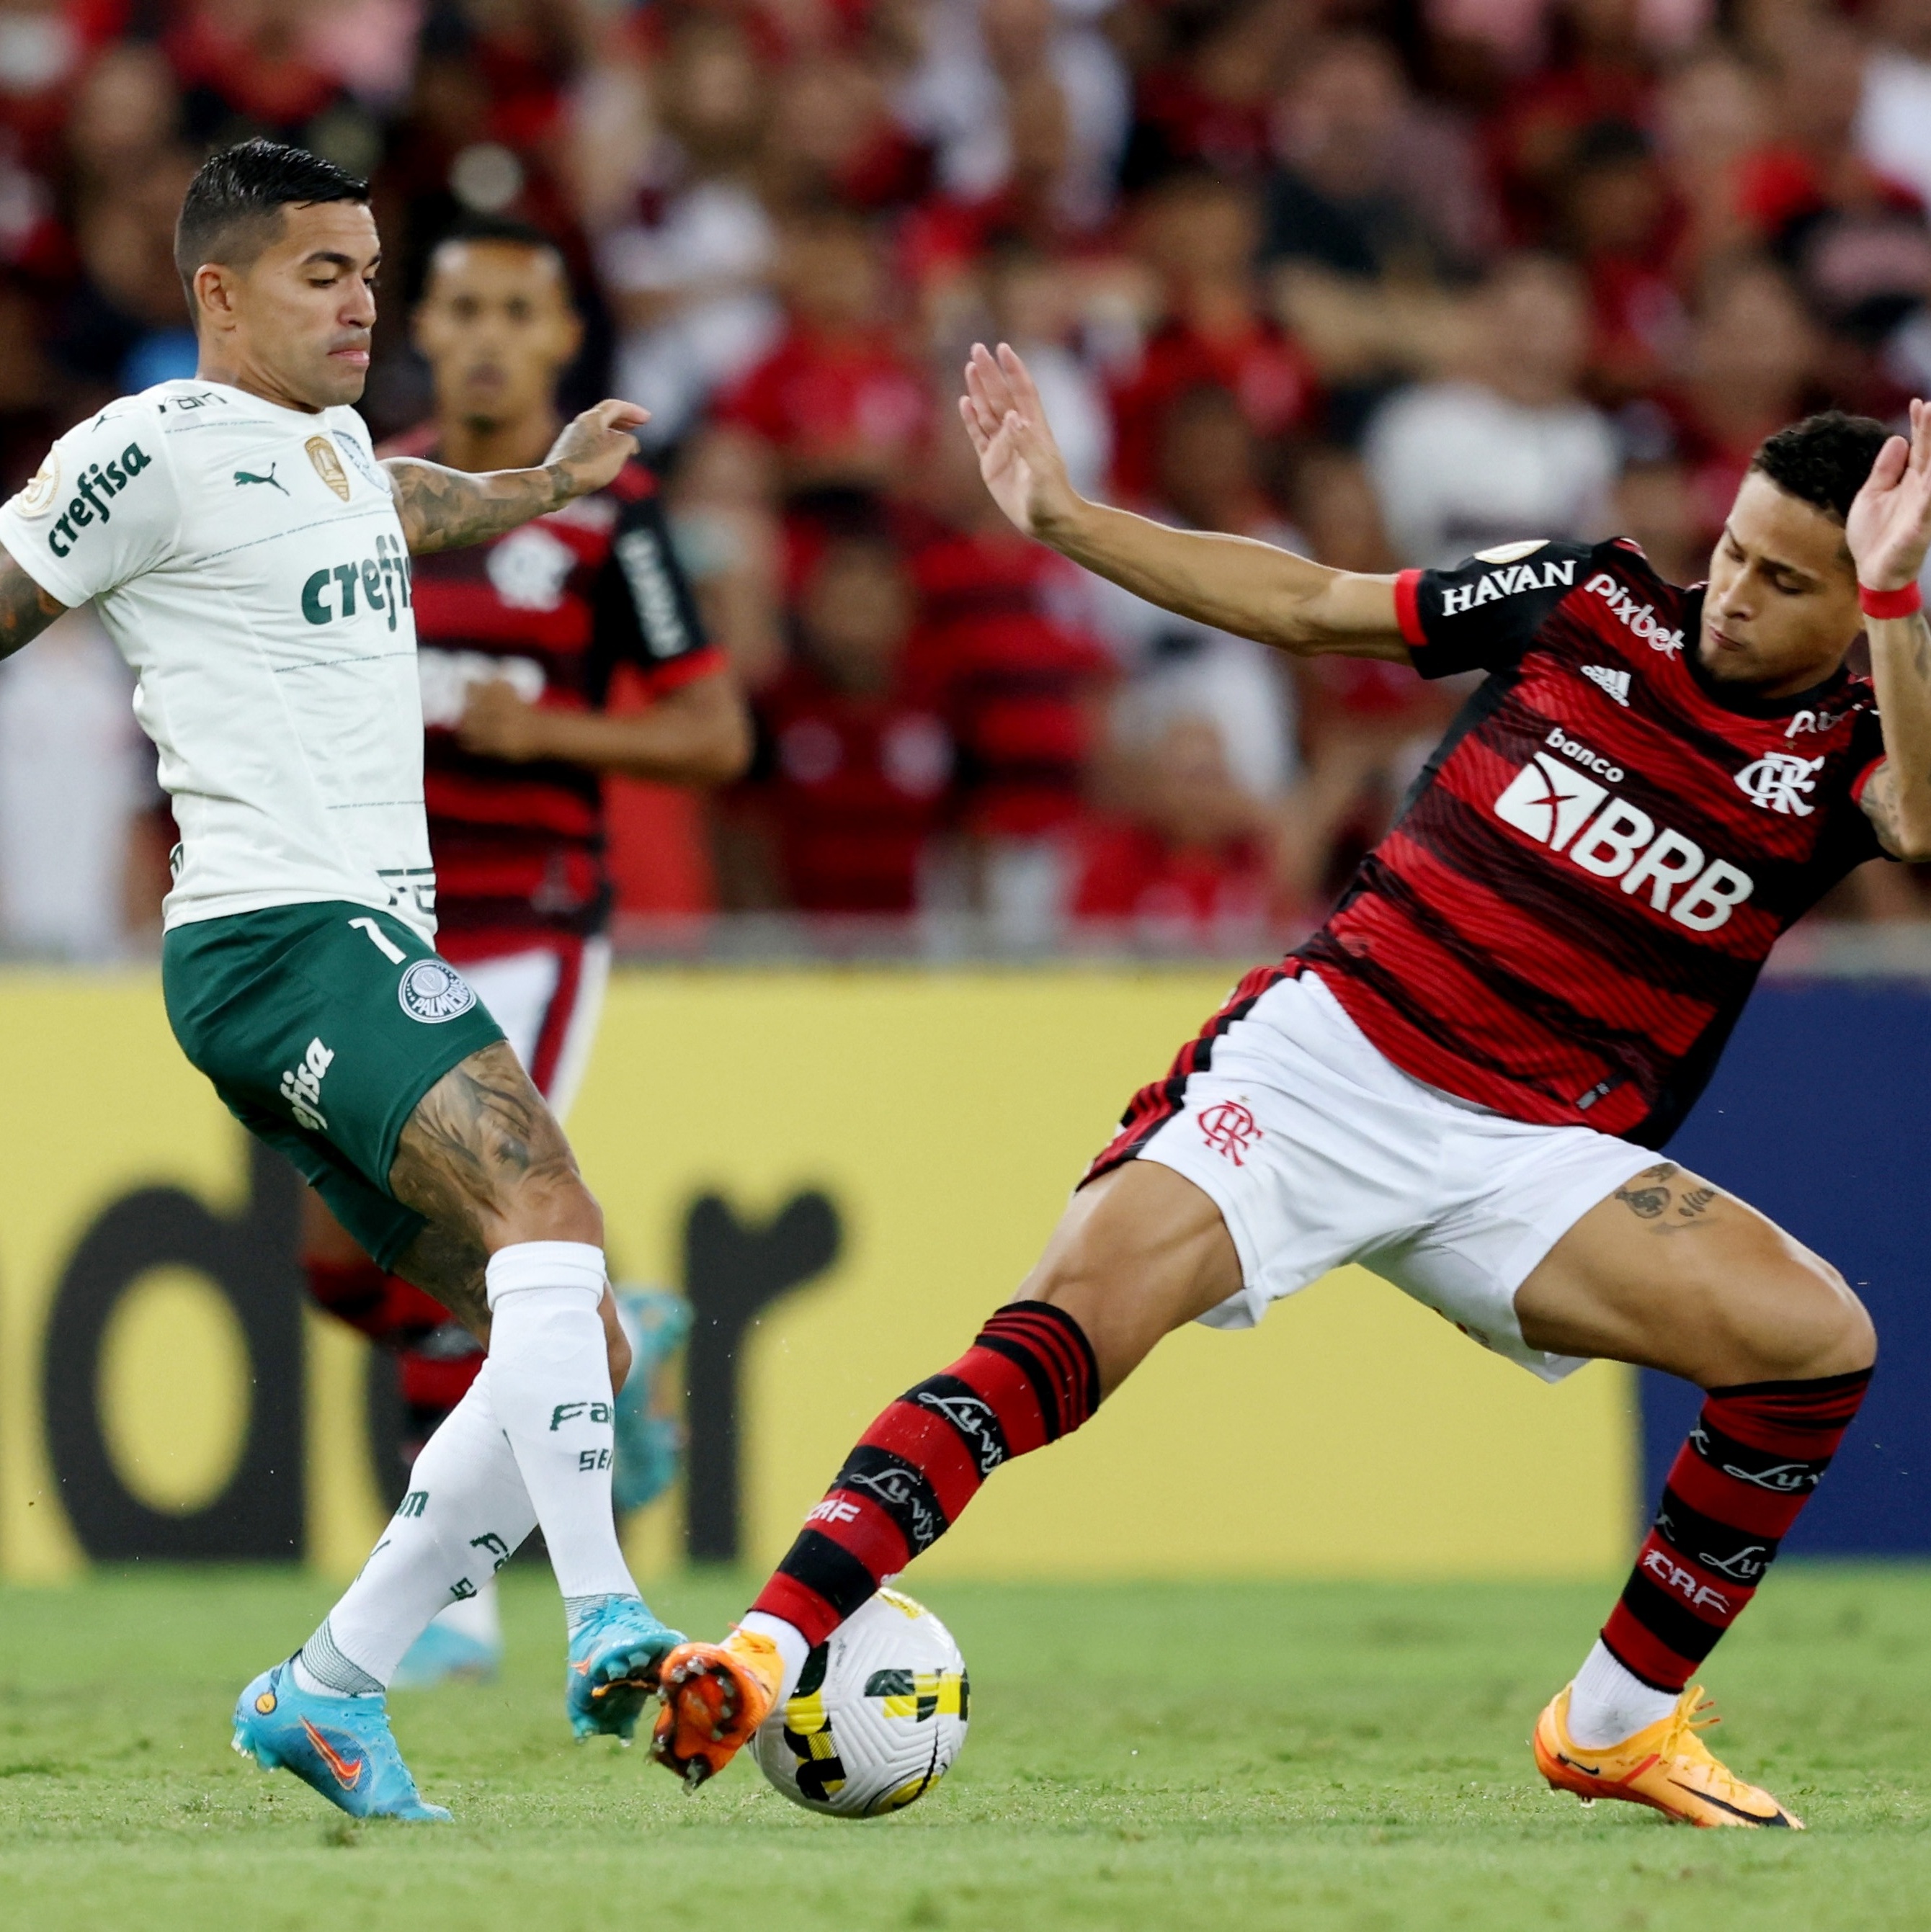 Flamengo x Palmeiras: os números de uma nova rivalidade nacional